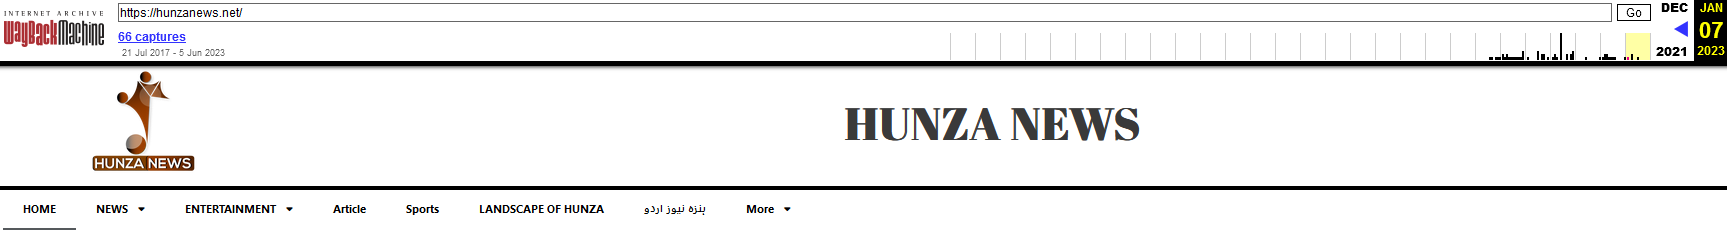 Figuur 4 Hunza News herontwerp geen optie download-app